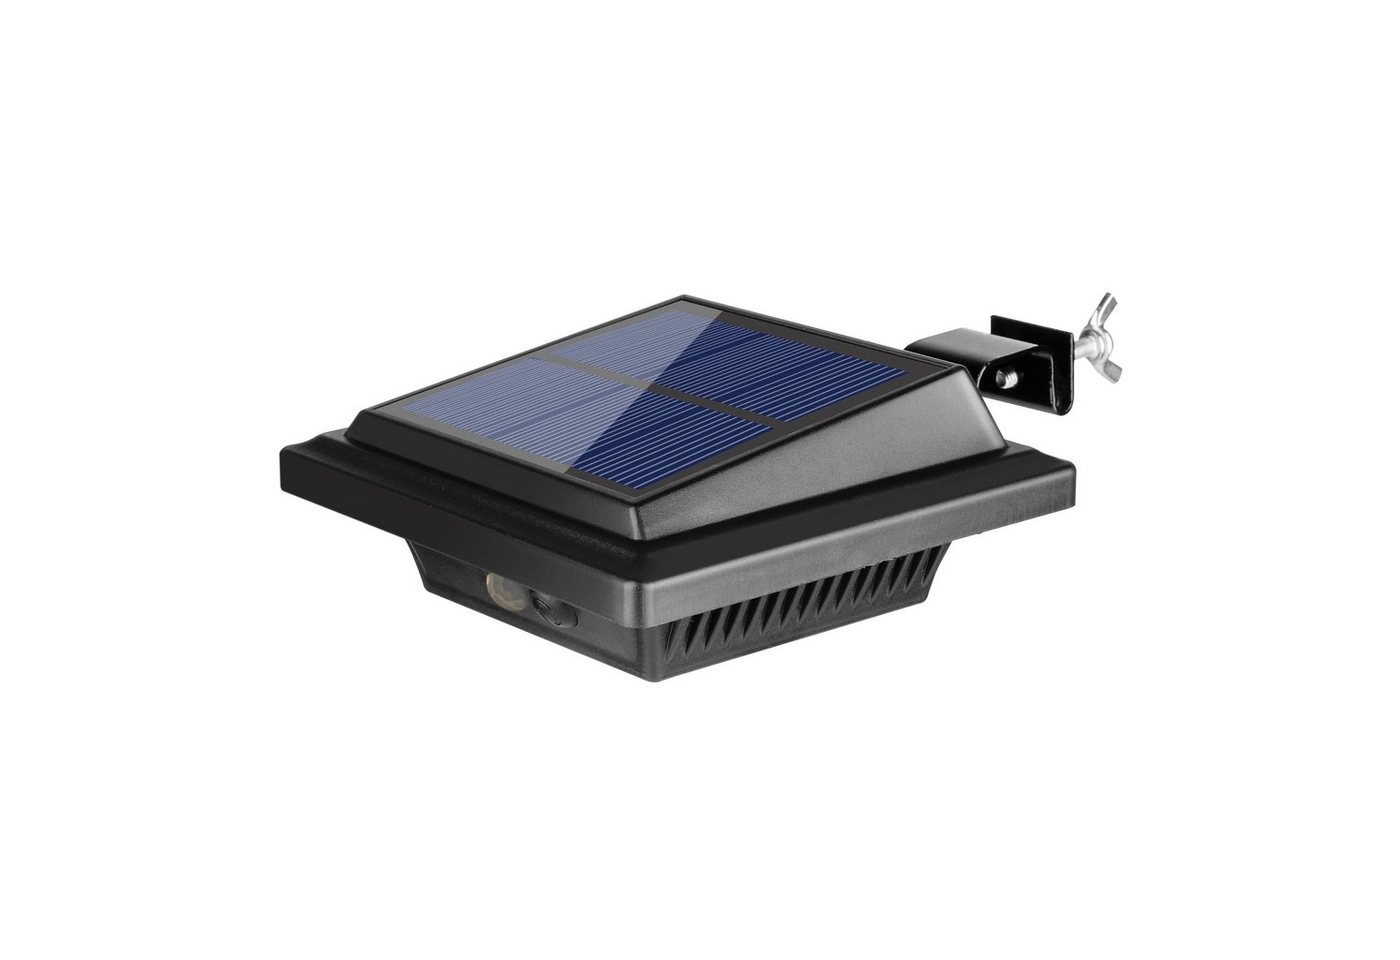 KEENZO LED Dachrinnenleuchte Solarlampen für Außen mit Bewegungsmelder 40LED dachrinnen leuchten von KEENZO